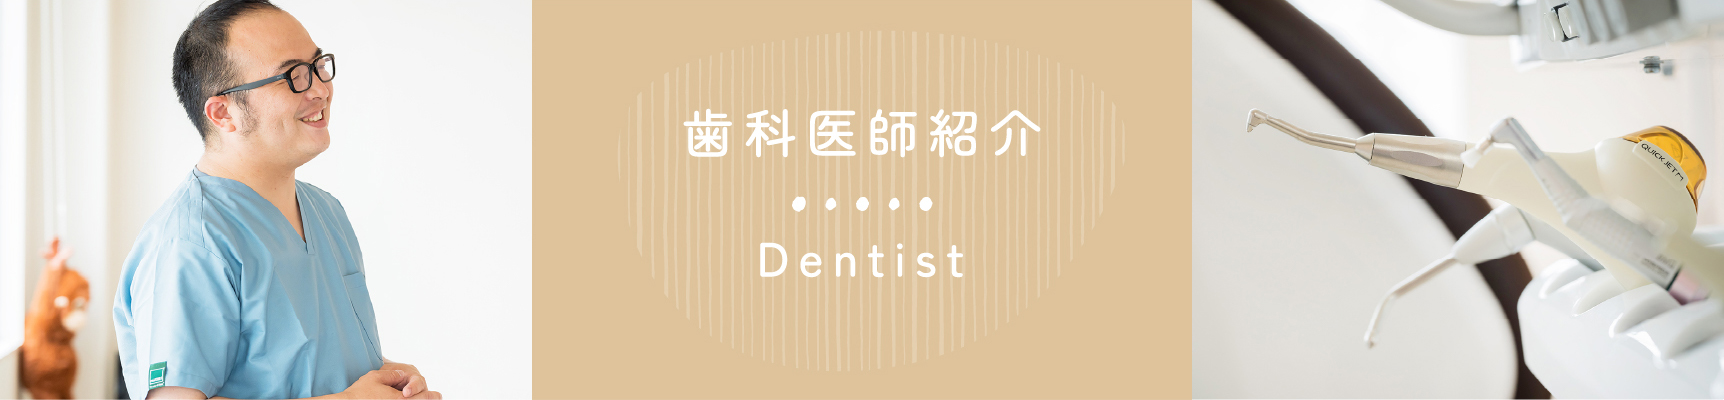 歯科医師紹介 Dentist